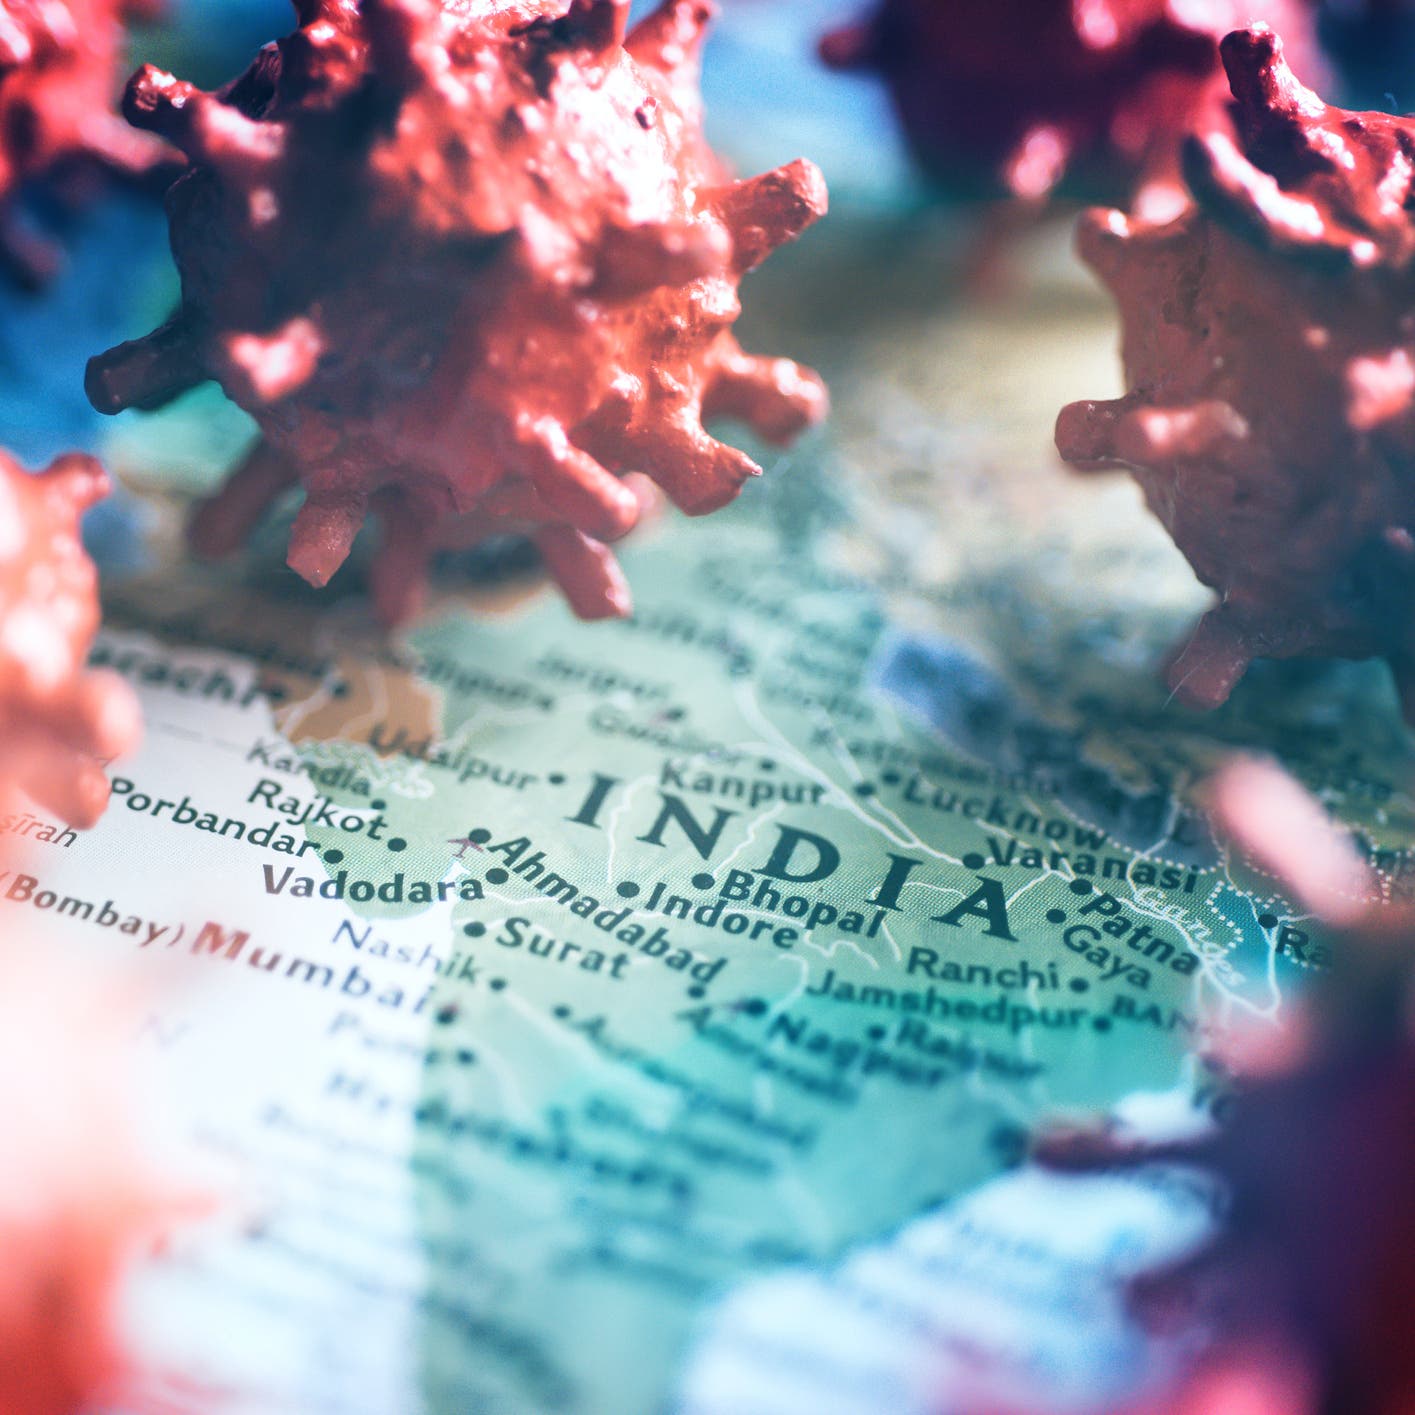 الكشف عن طفرات بكورونا بالهند يمكنها تجنب الاستجابة المناعية 